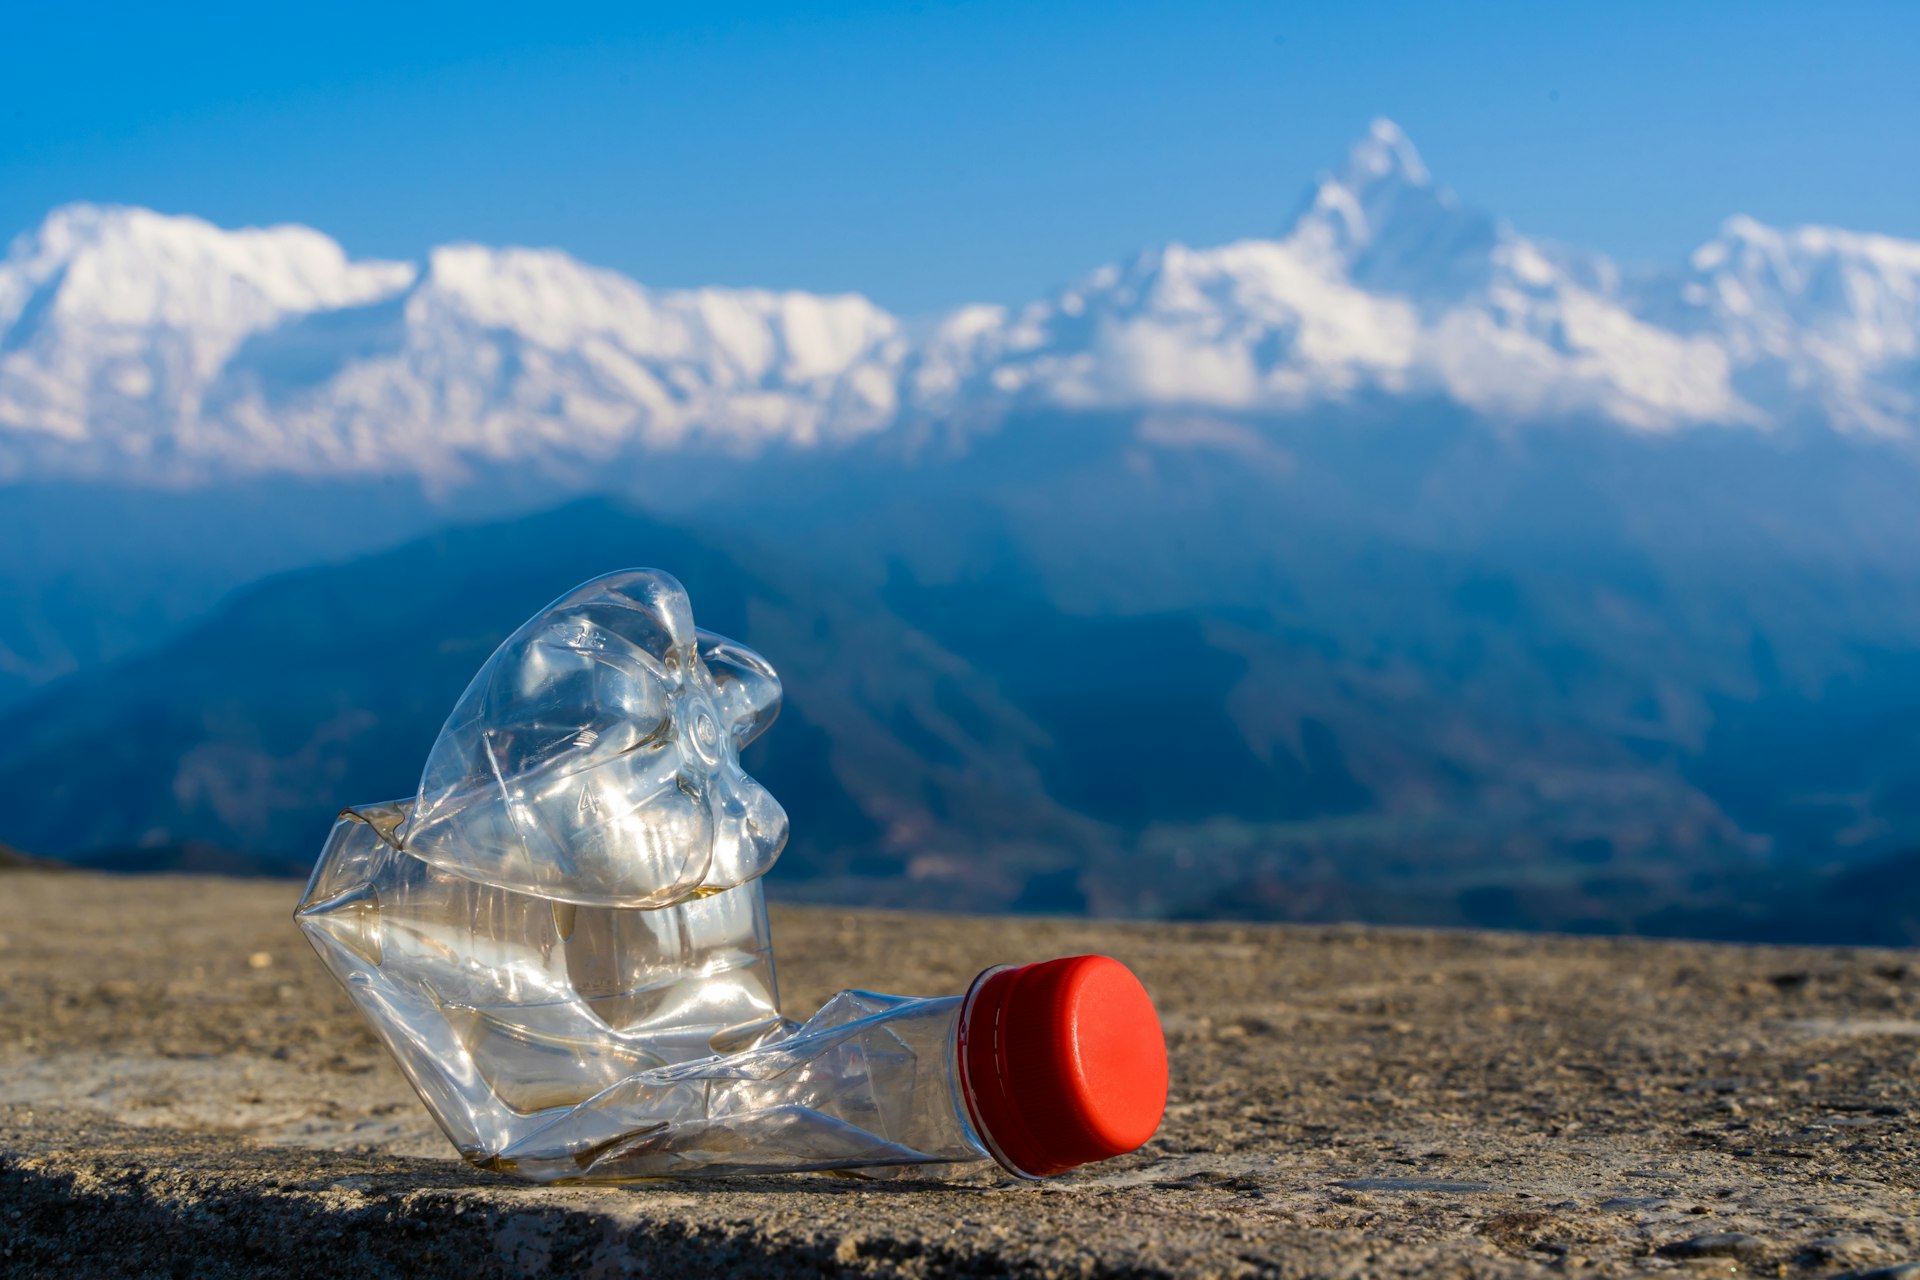 ÃÂ¡rumpled empty plastic bottle on the background of a Annapurna mountain range, Himalaya. Environmental pollution in the tourist regions of the Himalaya mountains.